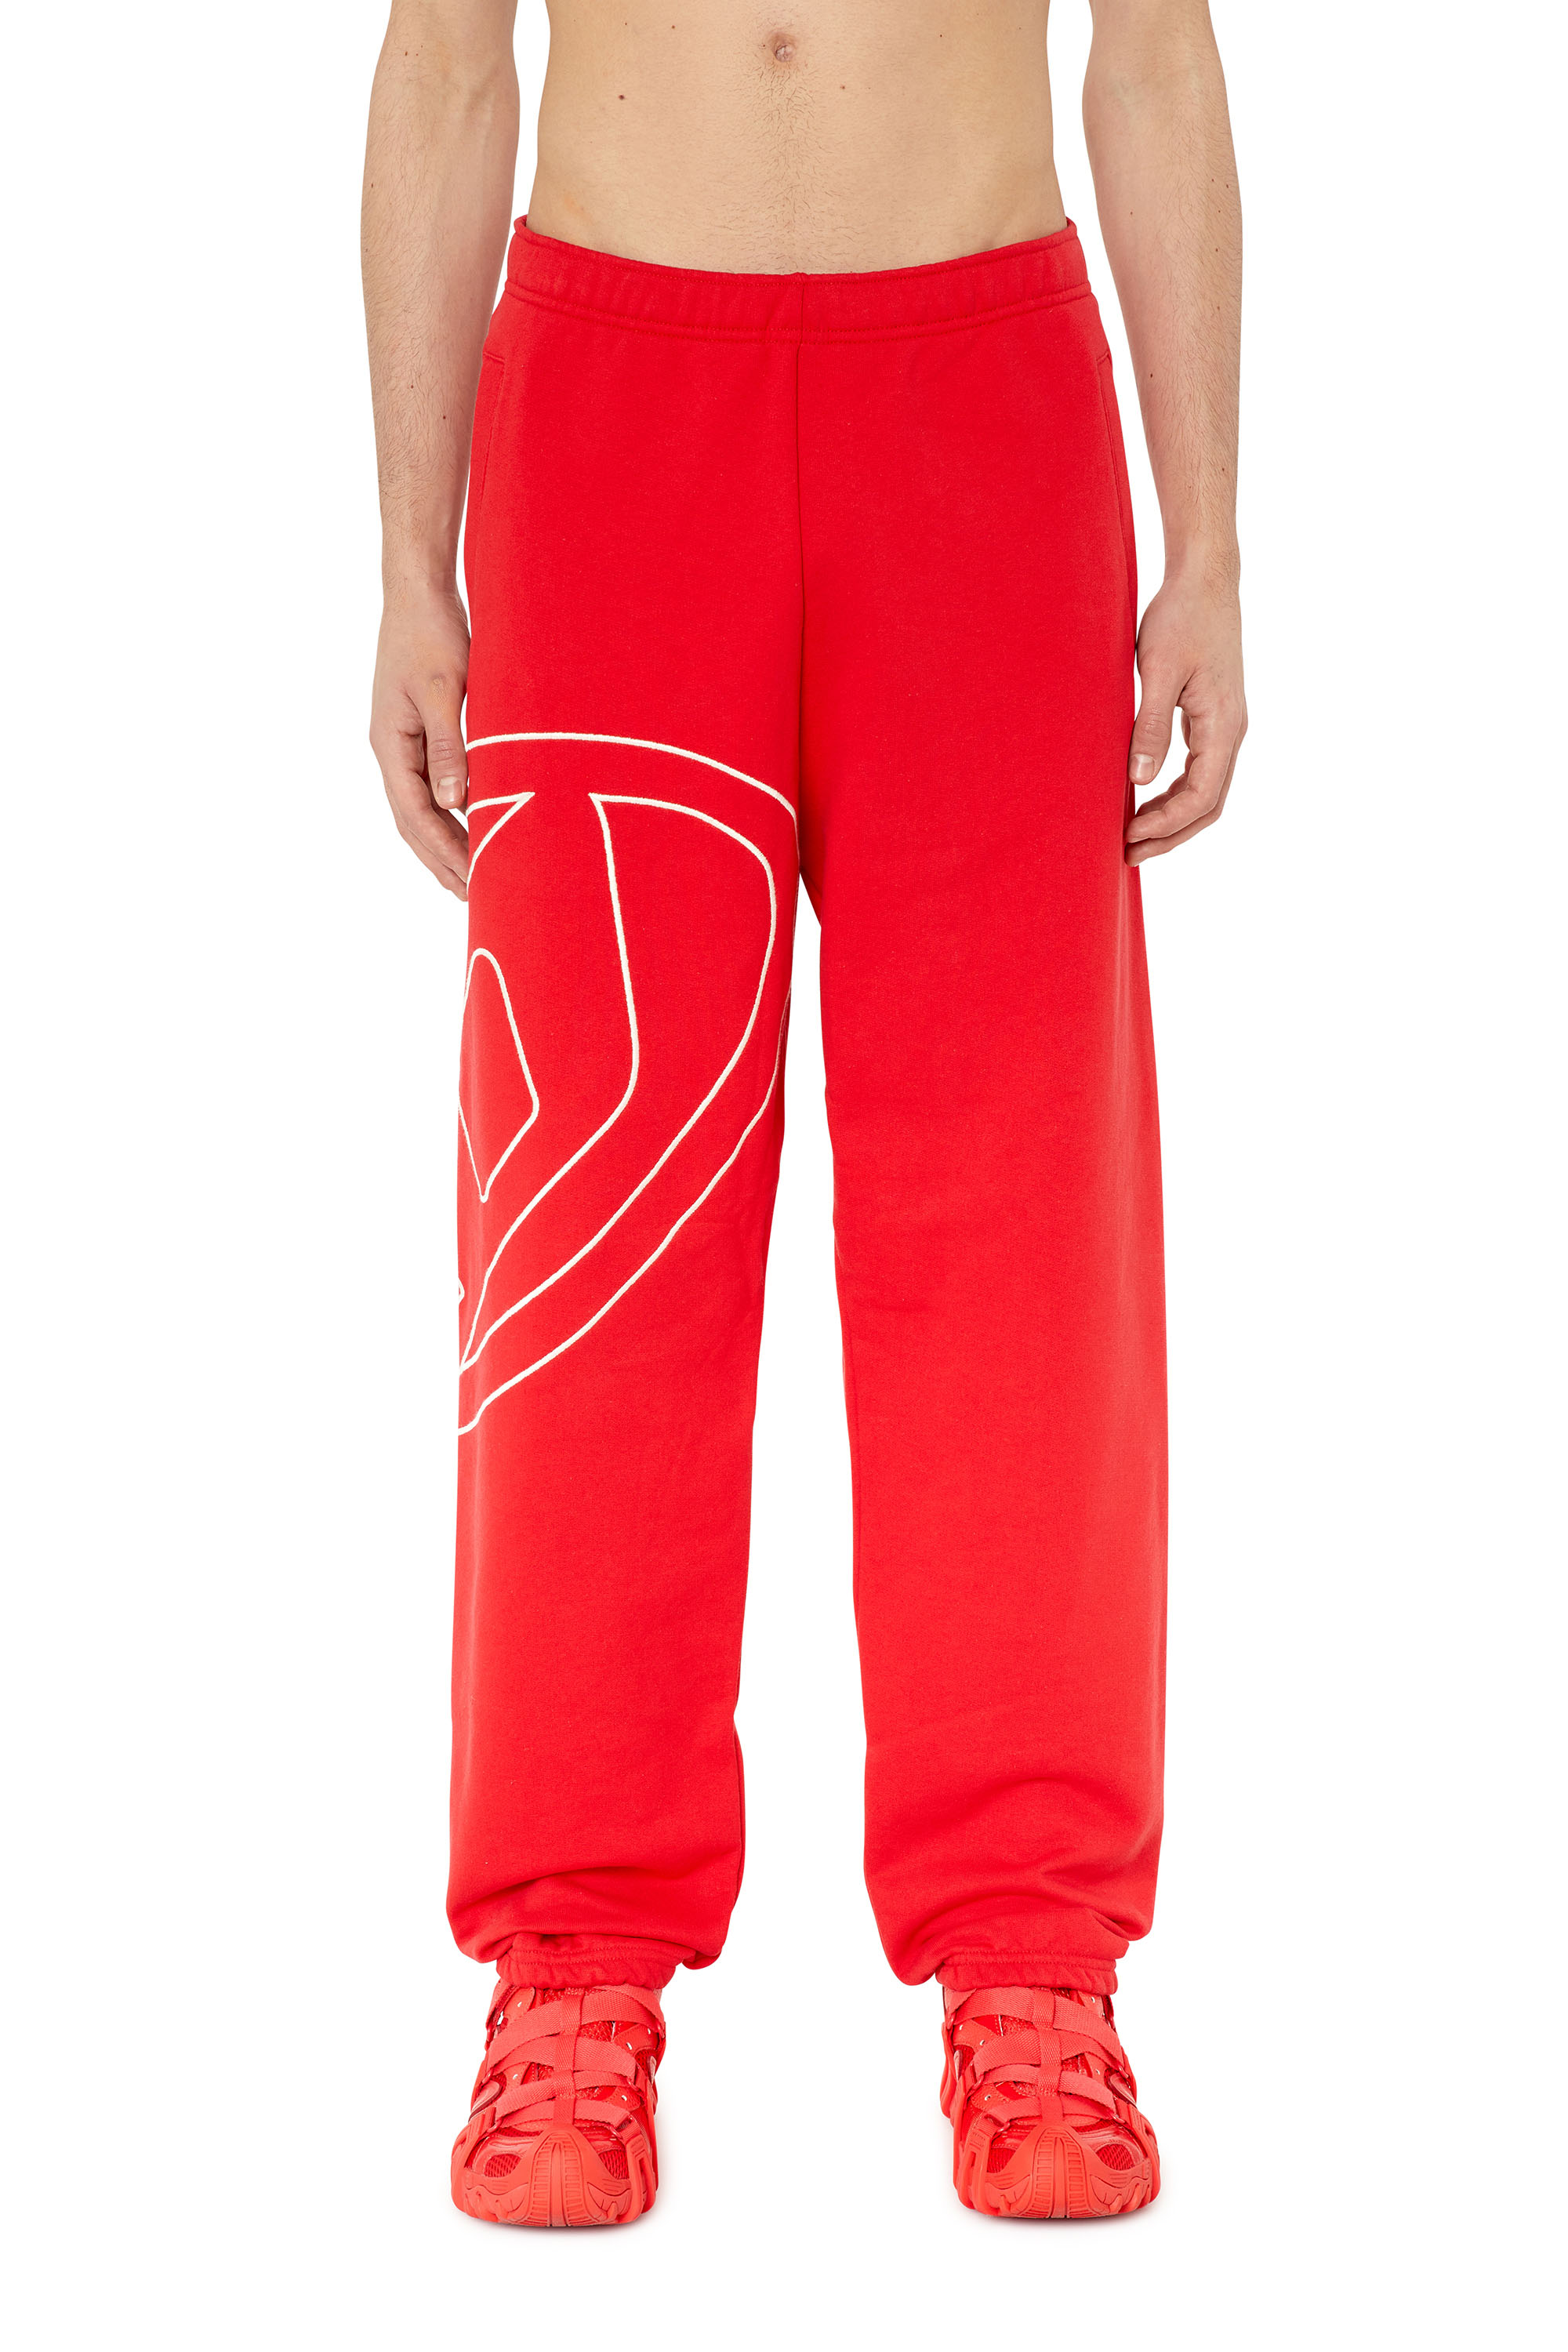 Diesel - Pantalones deportivos con logotipo D grande - Pantalones - Hombre - Rojo